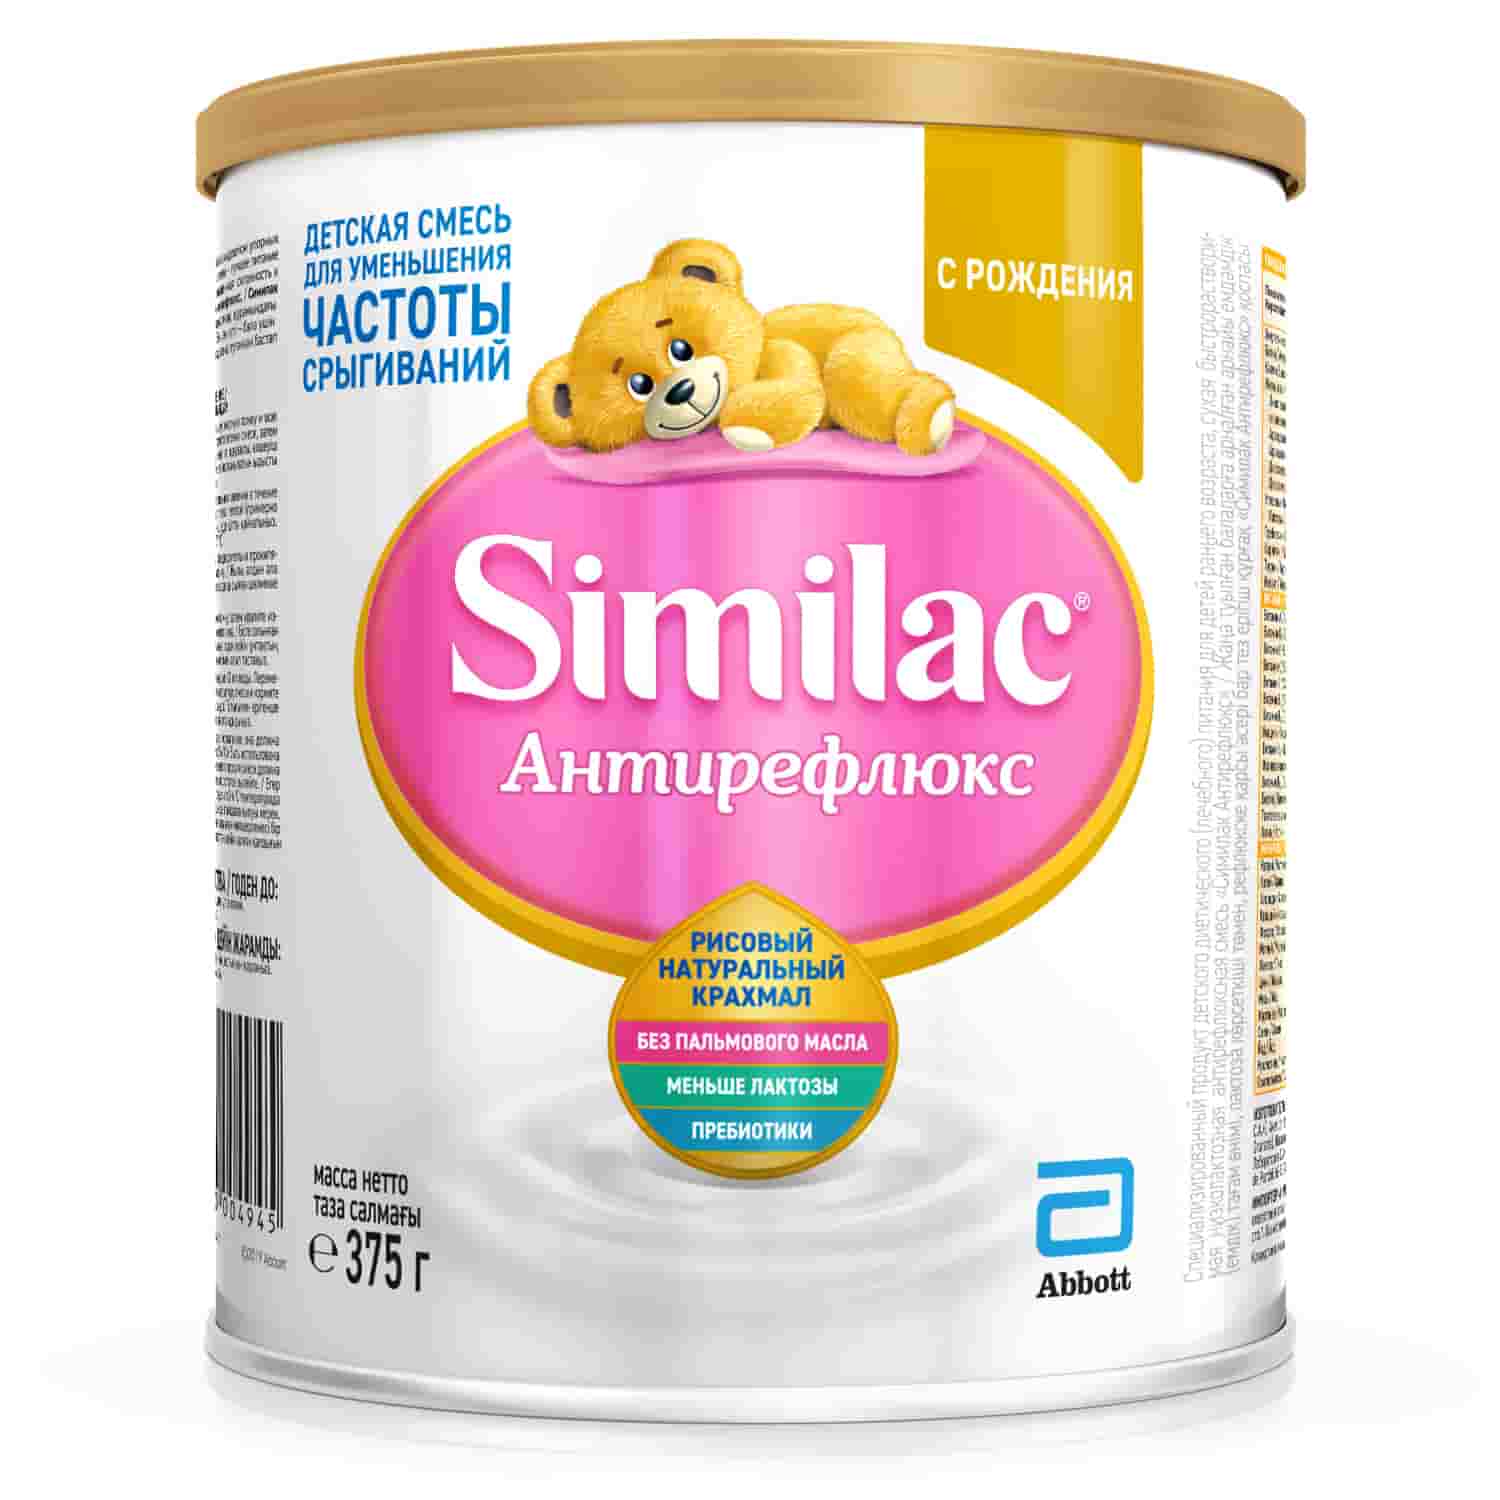 Молочная смесь Симилак антирефлюкс 1 0-6 месяцев, 375 г